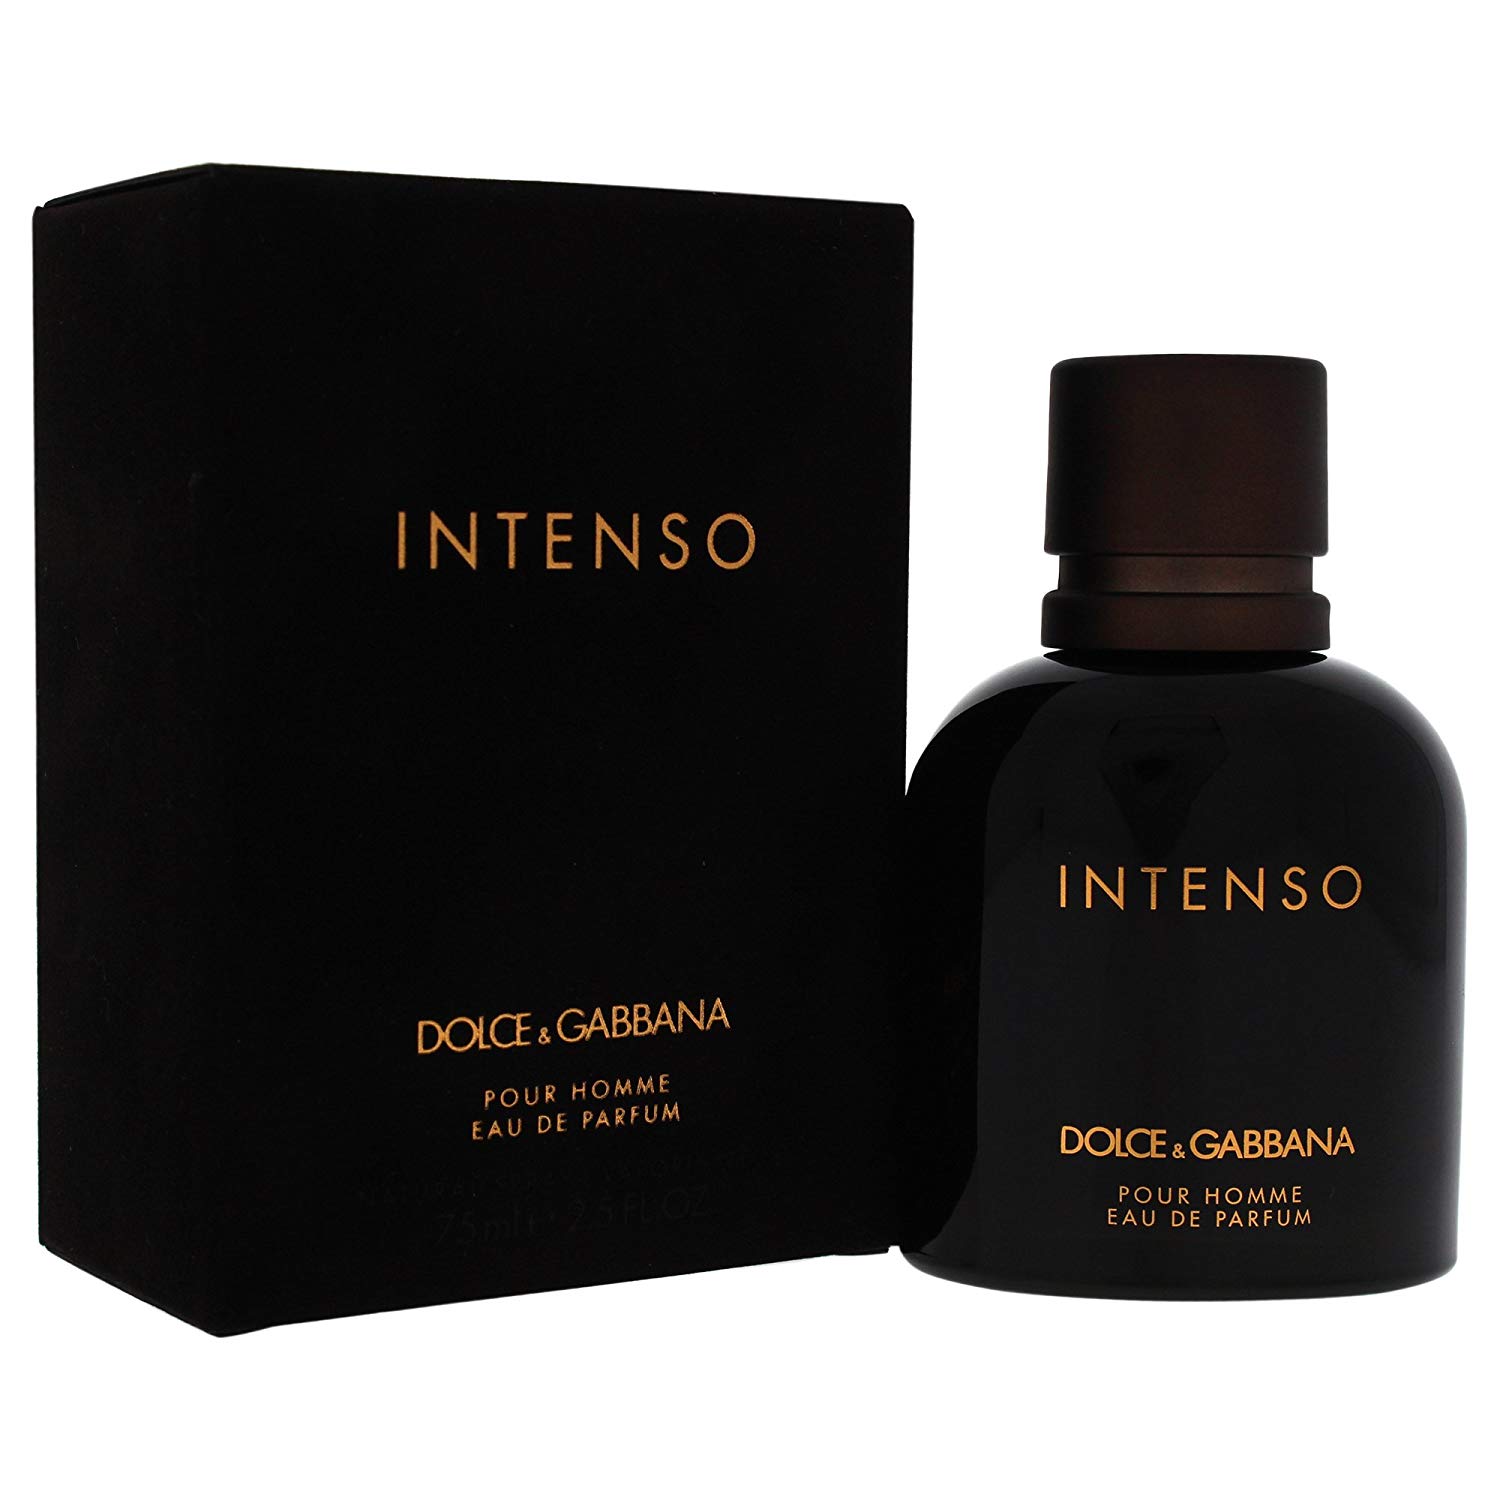 Dolce & Gabbana Pour Homme Intenso Eau de Parfum 75ml Spray | Perfumes ...